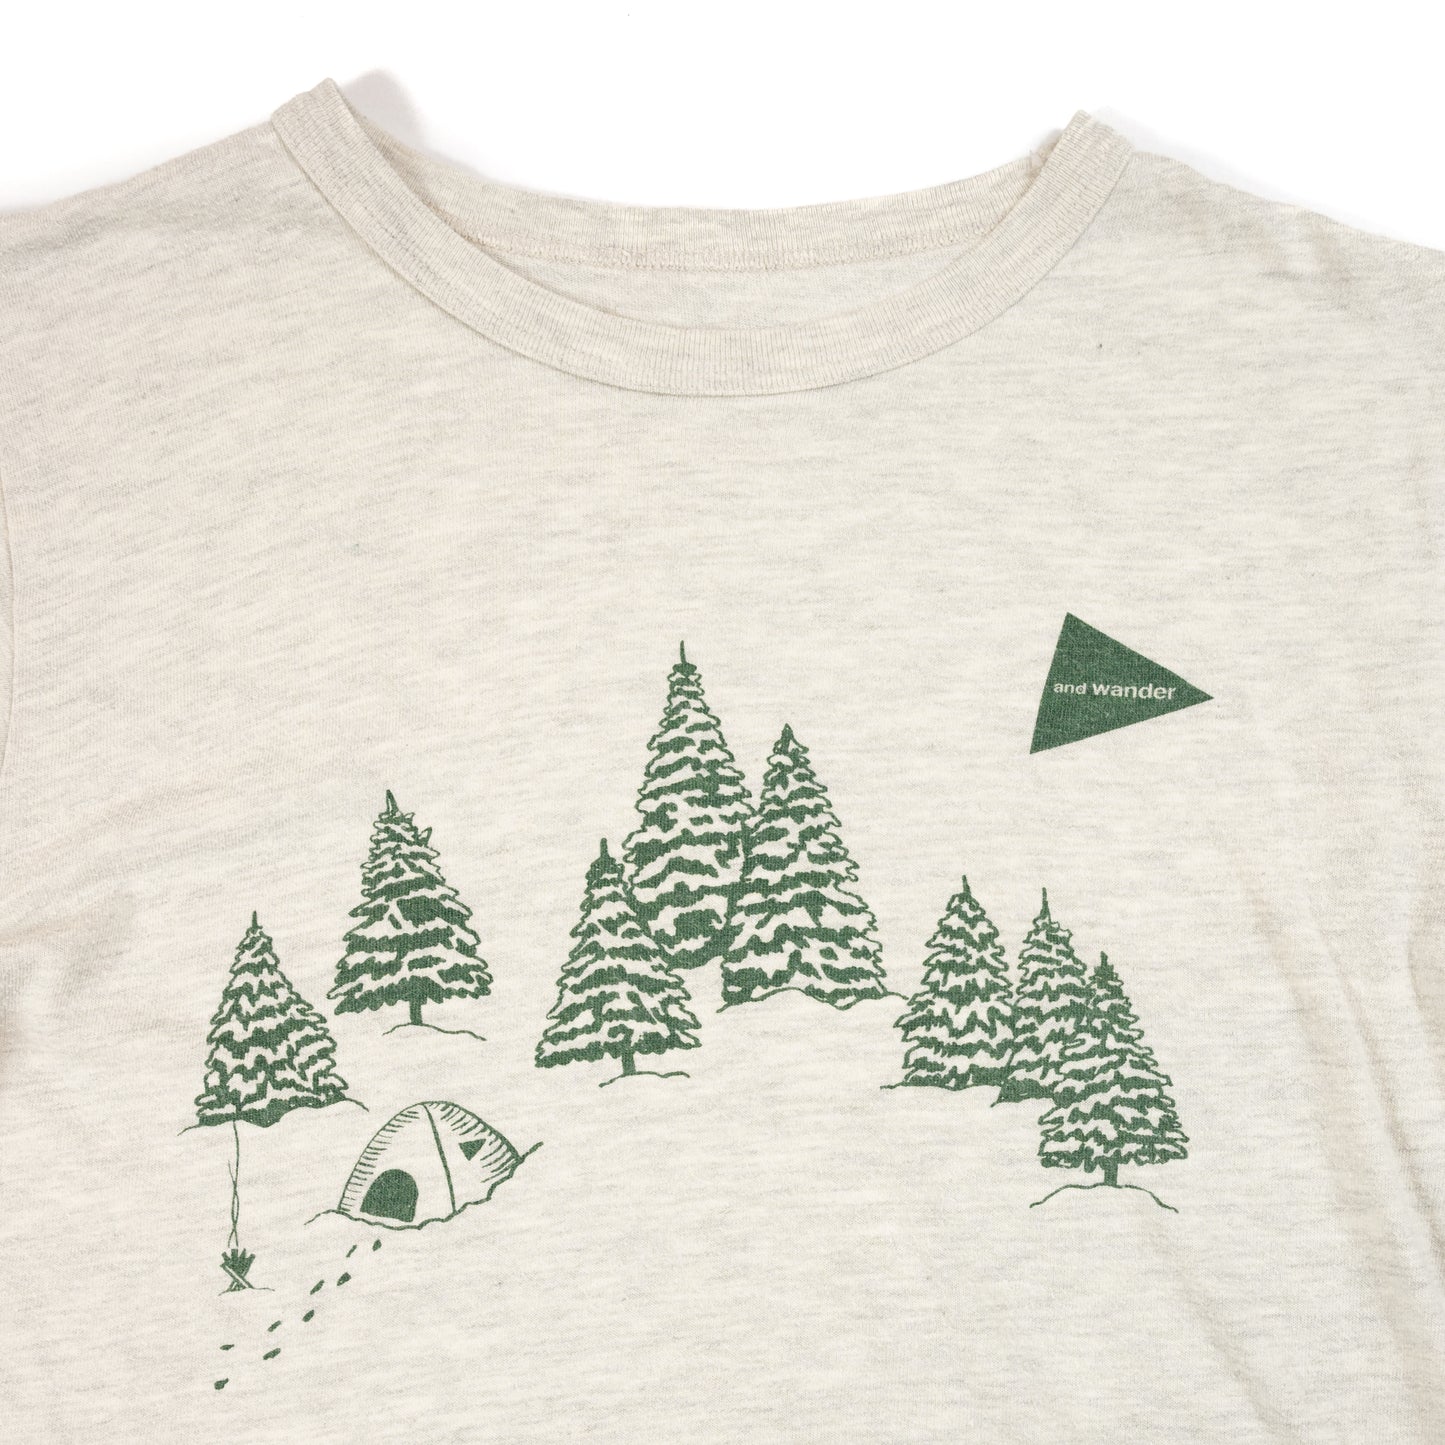 And Wander Camping T-Shirt